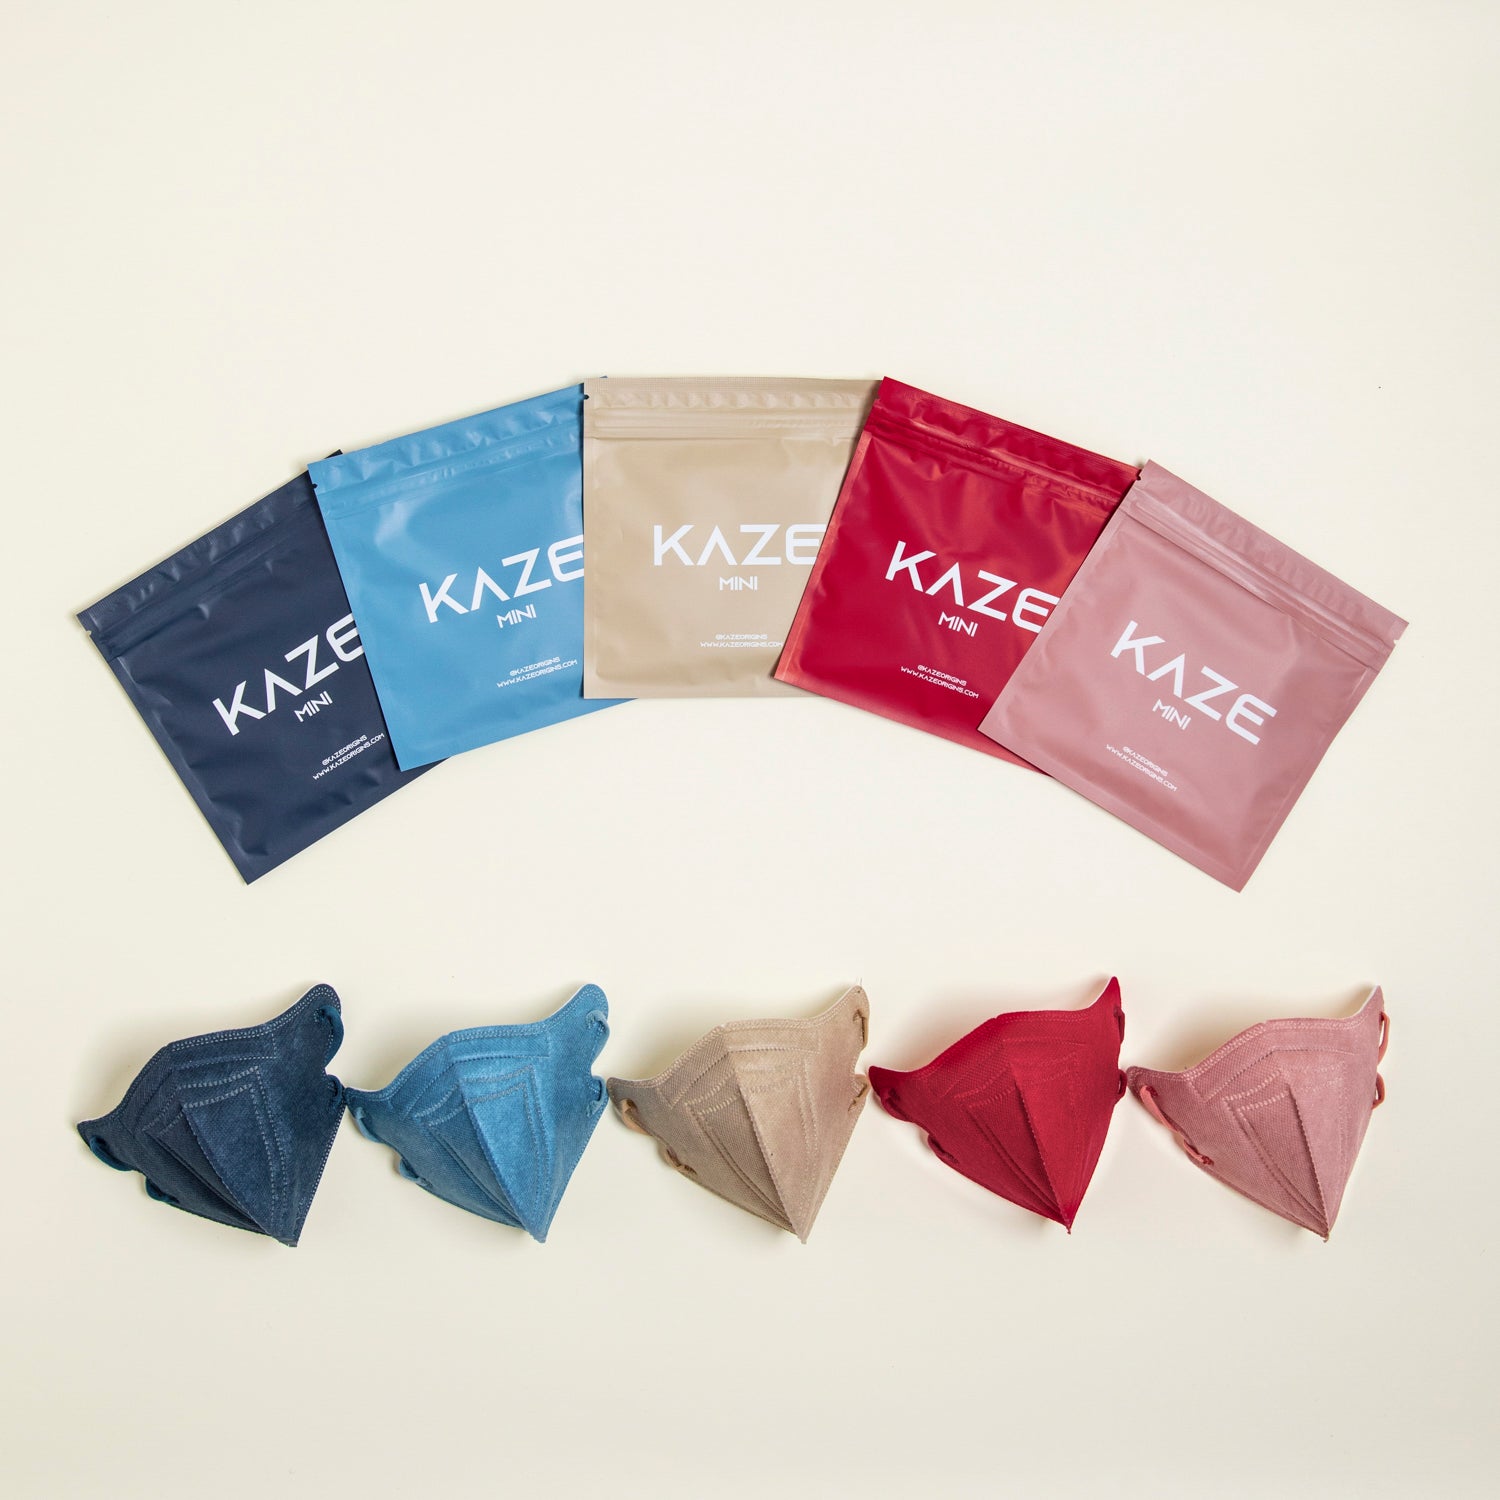 KAZE Masks- Mini Glacier Series